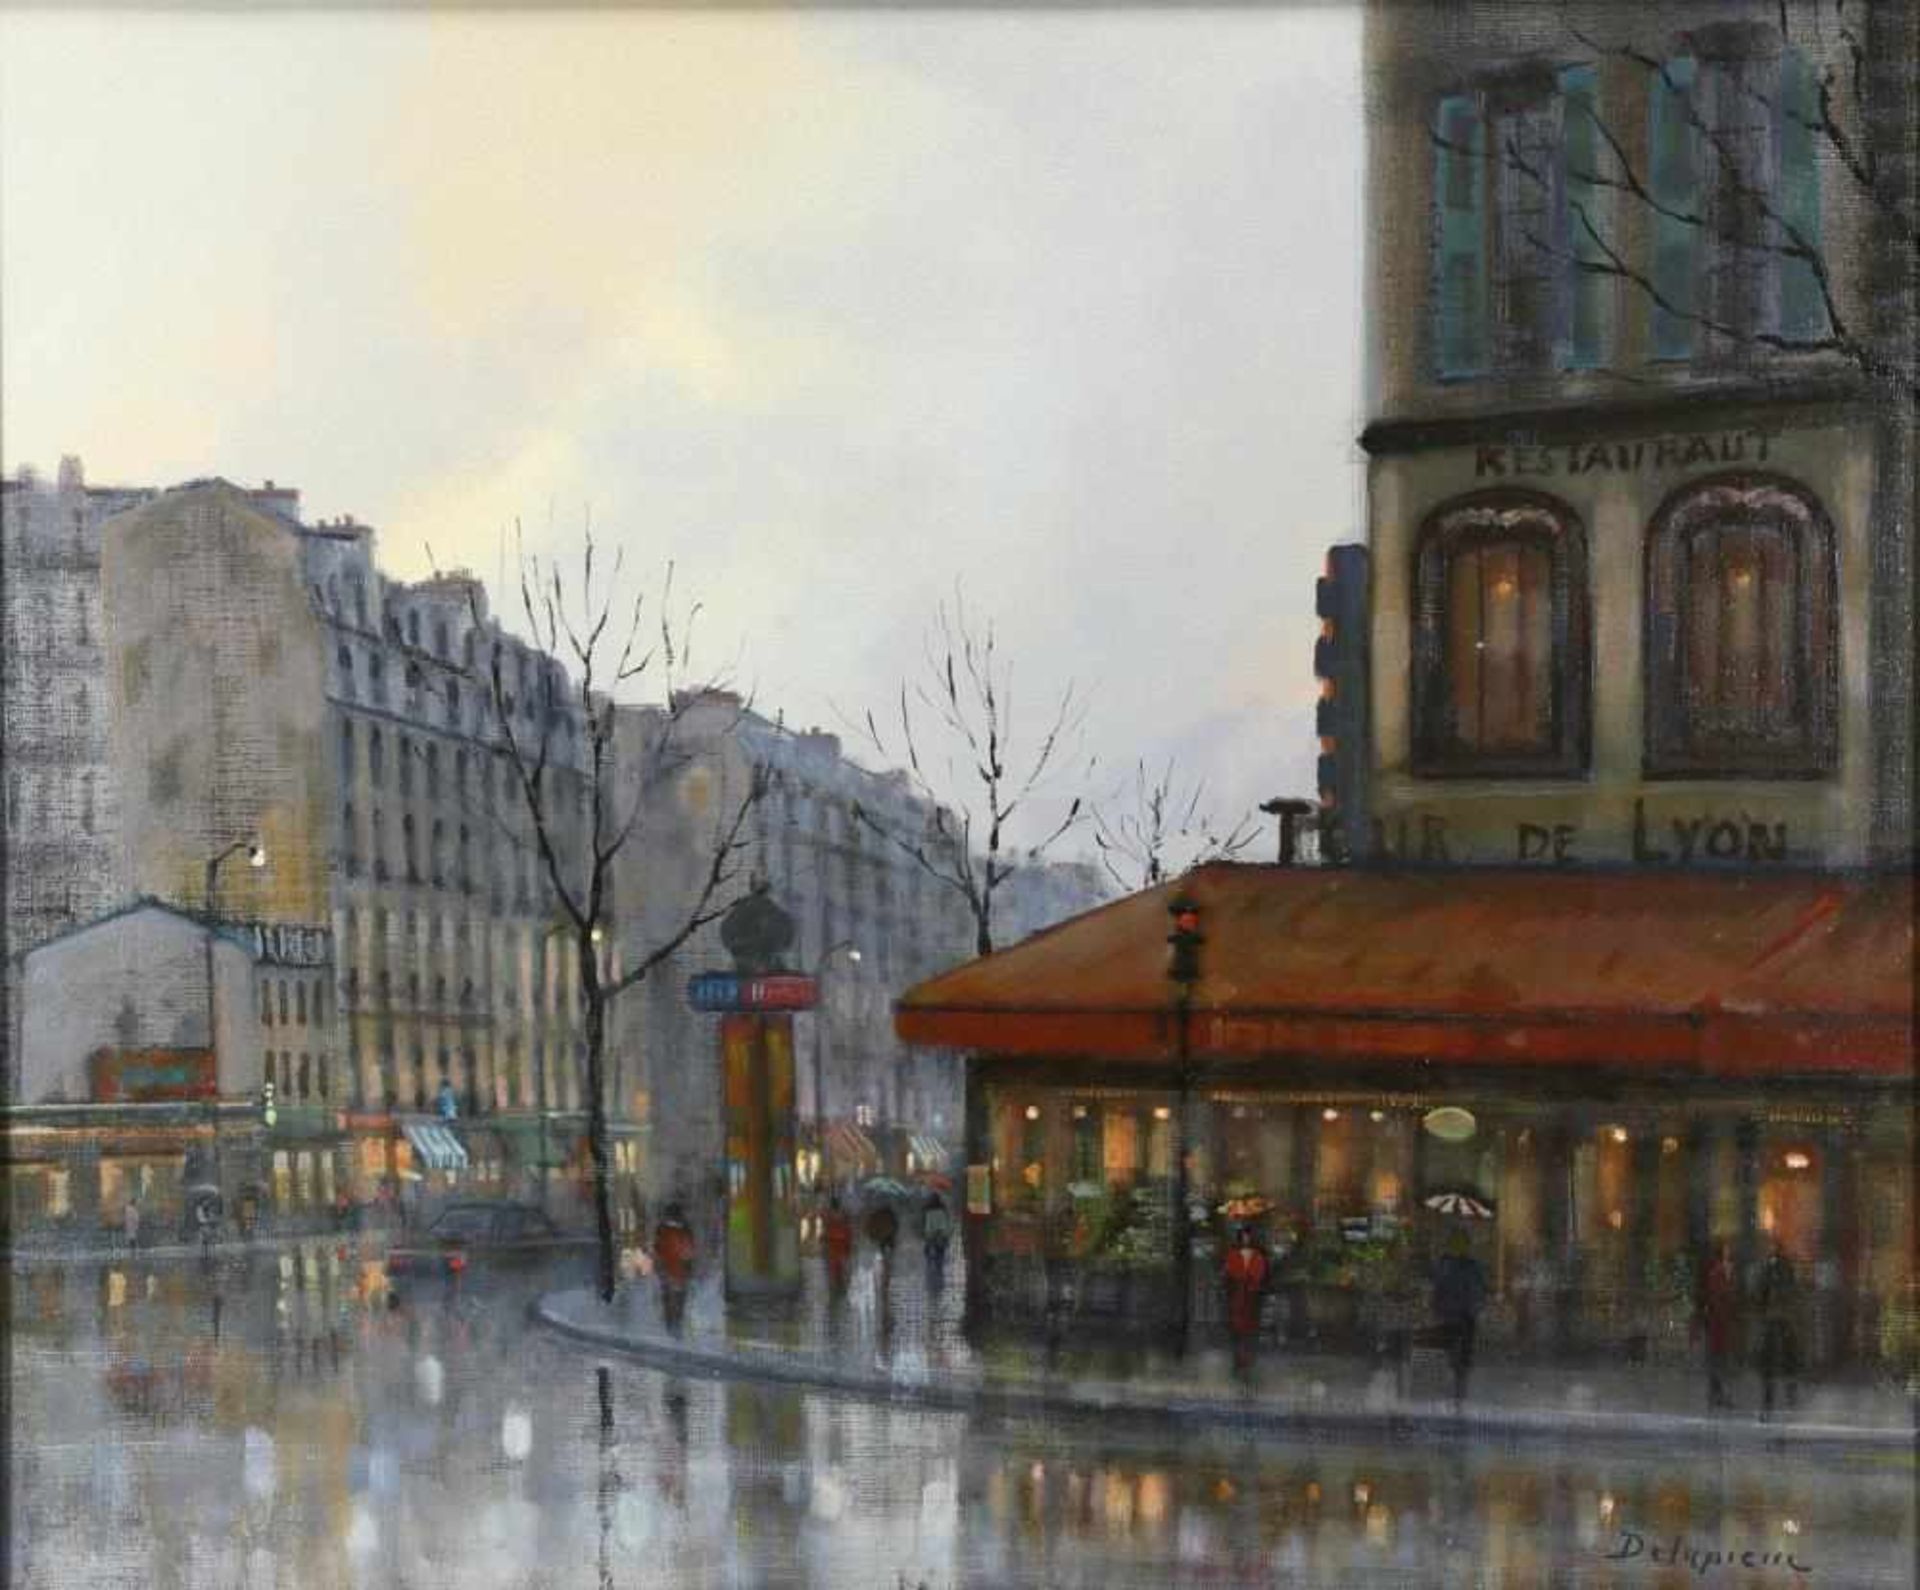 Delapierre, Roger * 1935 Genf. Blick auf das Restaurant Gare de Lyon in Paris. Öl auf Leinwand.